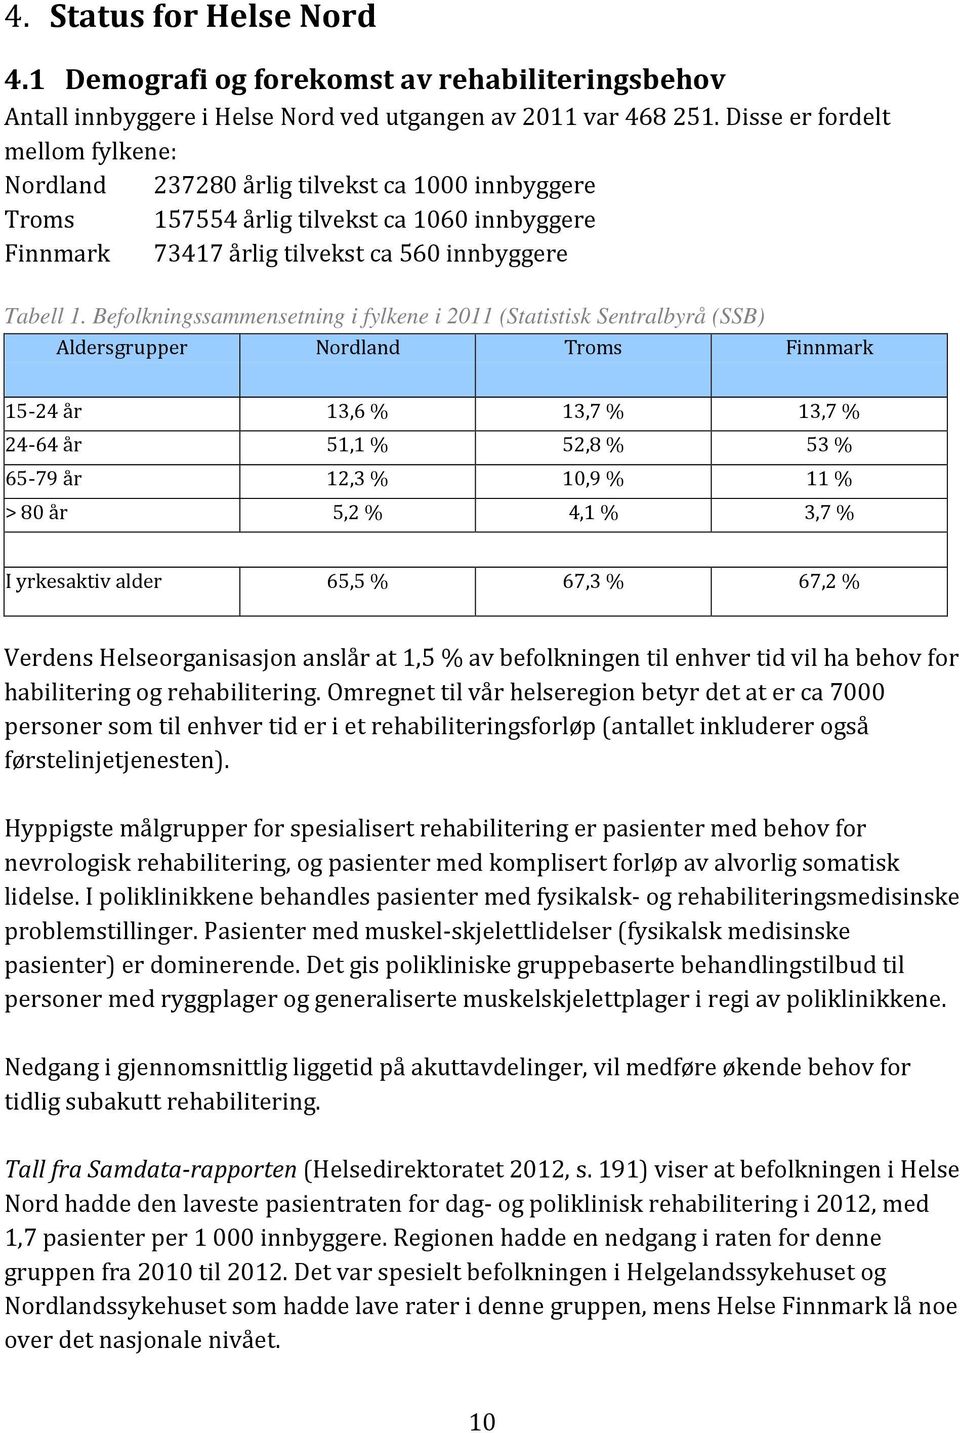 Befolkningssammensetning i fylkene i 2011 (Statistisk Sentralbyrå (SSB) Aldersgrupper Nordland Troms Finnmark 15-24 år 13,6 % 13,7 % 13,7 % 24-64 år 51,1 % 52,8 % 53 % 65-79 år 12,3 % 10,9 % 11 % >